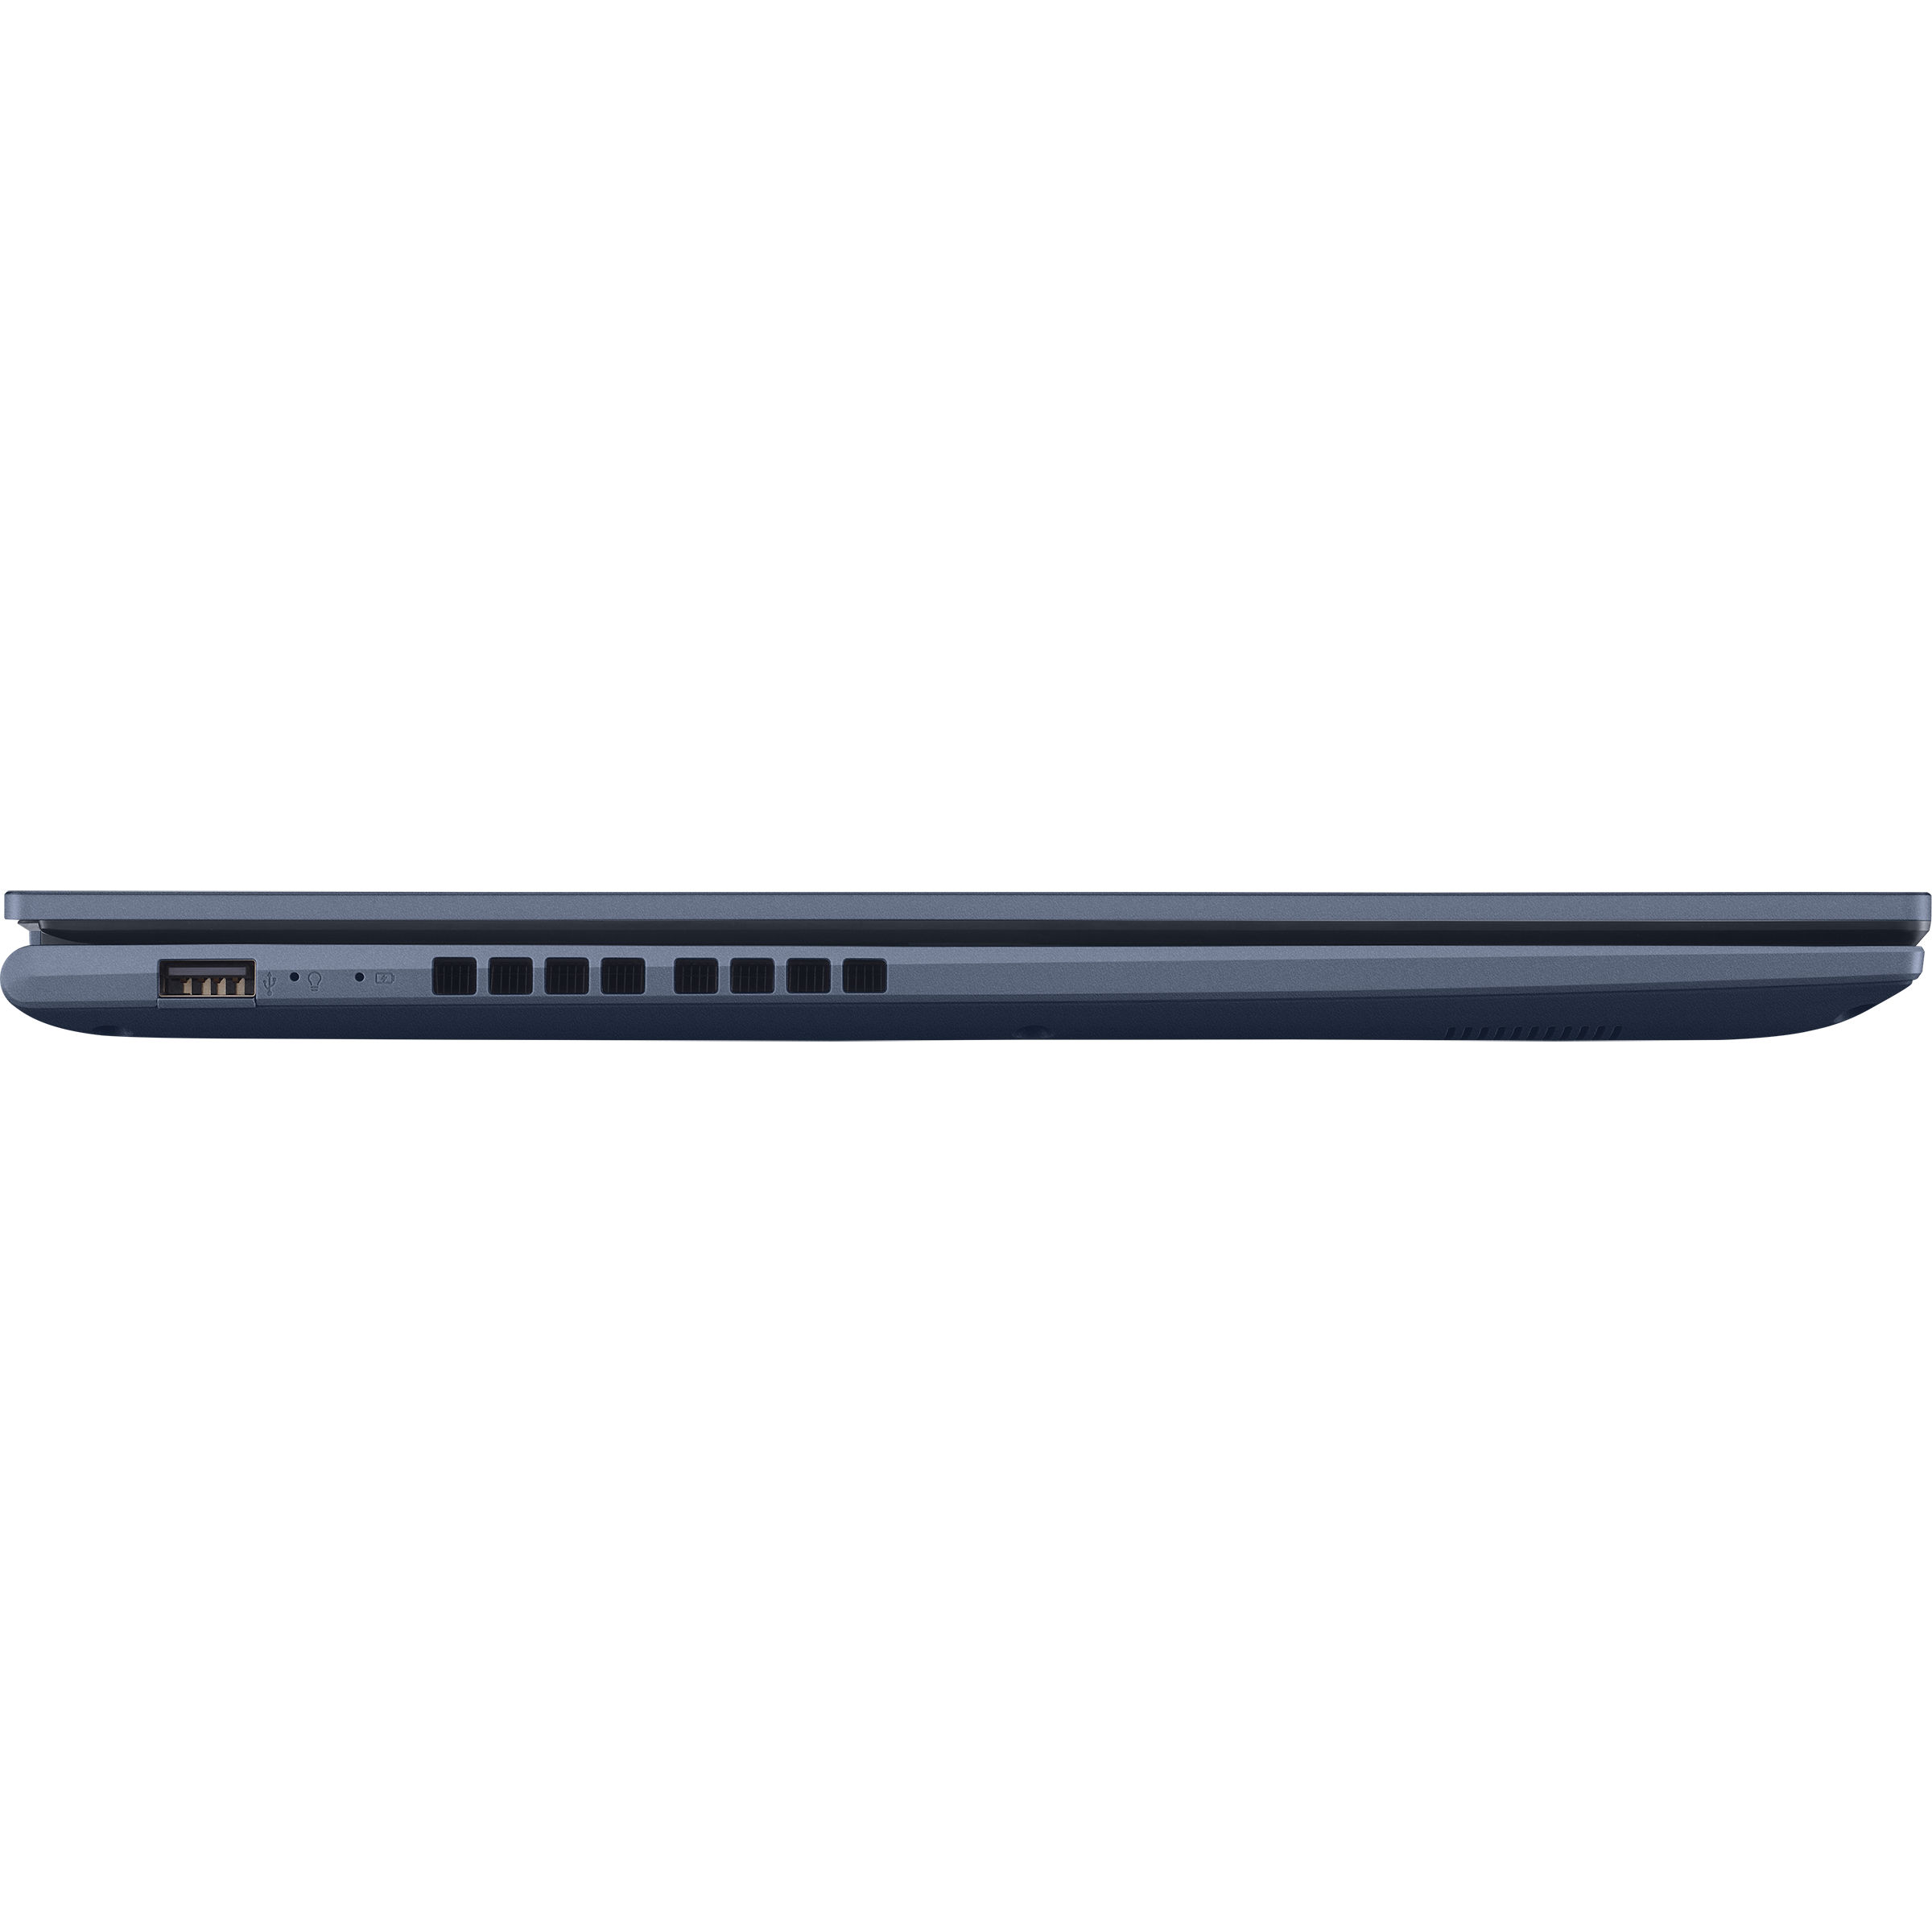 Vivobook 17 (M1702, Global 5000 series)｜Laptops For Home｜ASUS Ryzen AMD